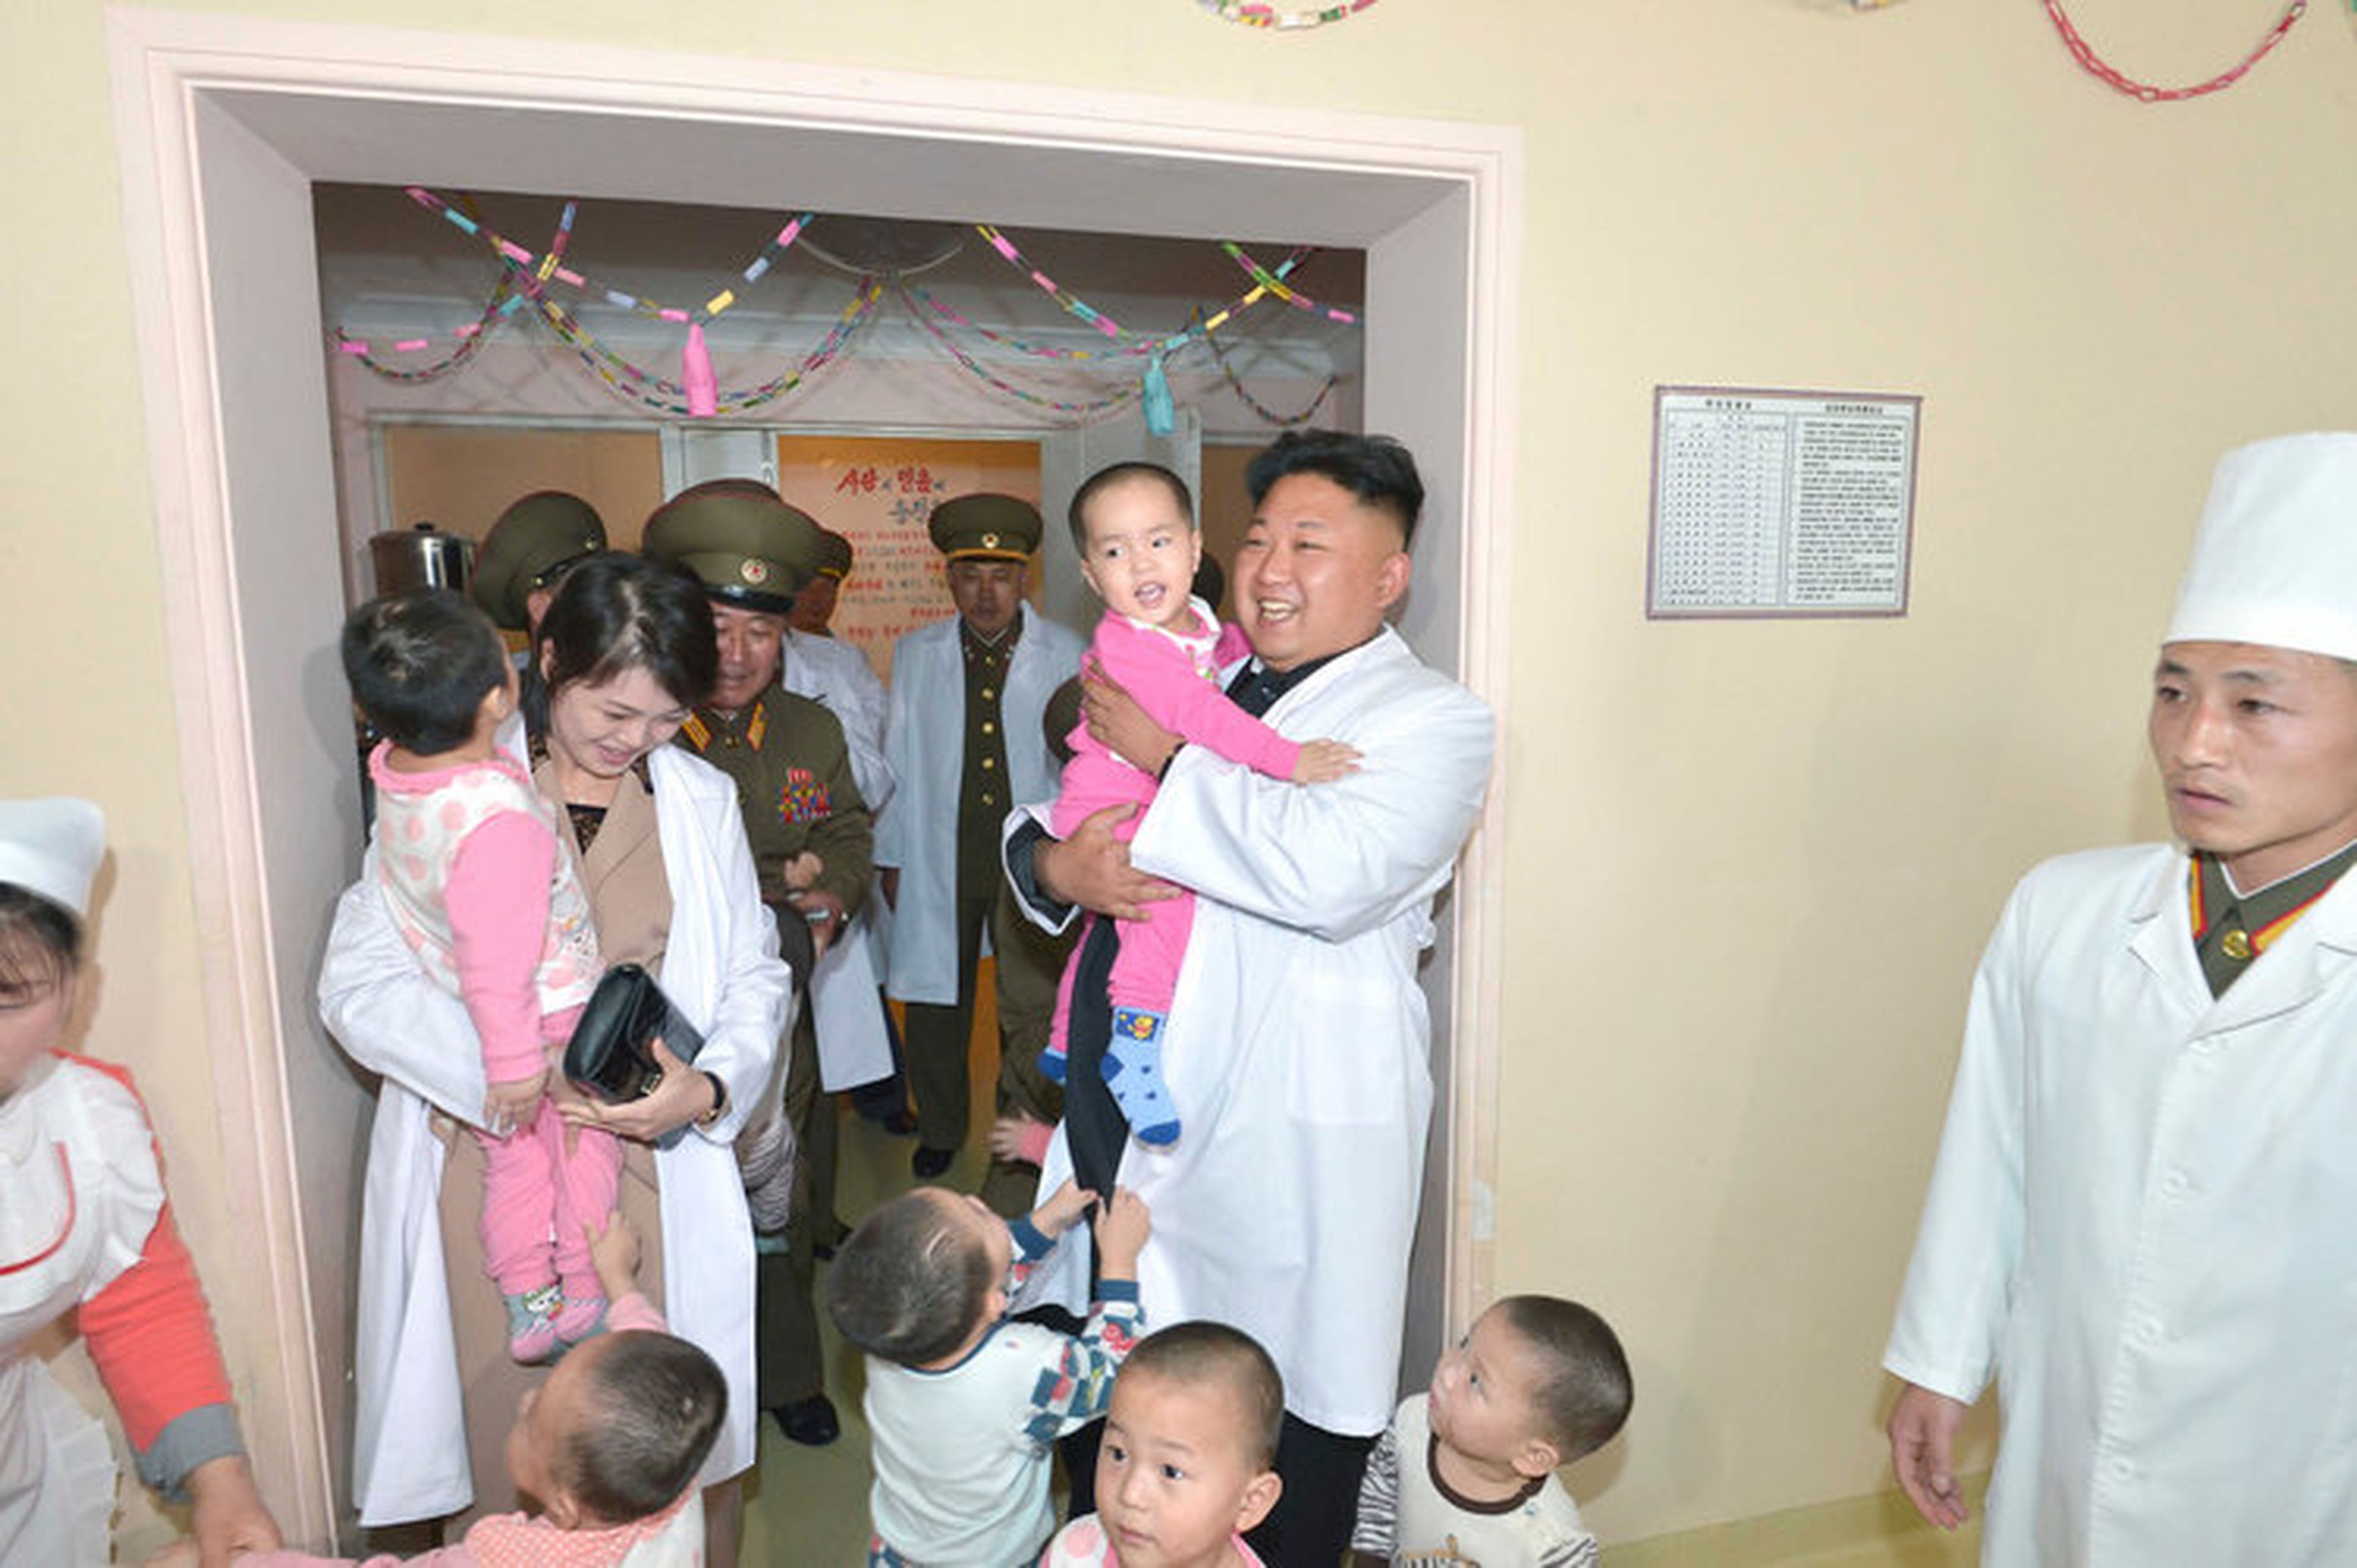 Kim y Ri juegan con niños durante una visita al hospital Taesongsan en Pyongyang en esta fotografía sin fecha publicada por la KCNA el 19 de mayo de 2014.